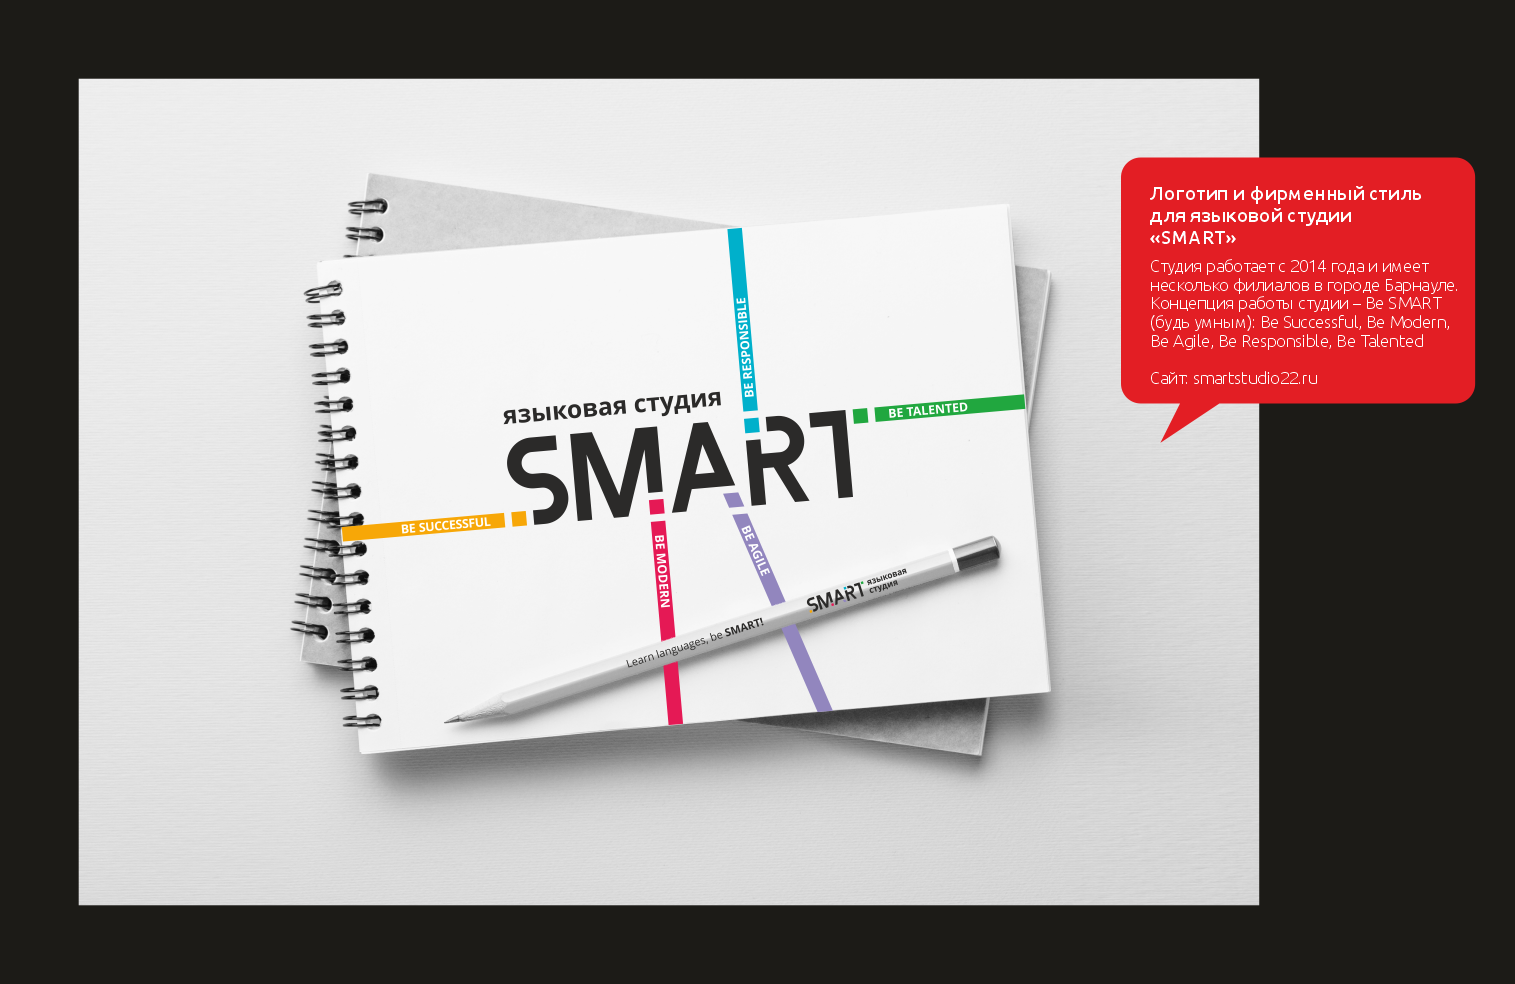 Логотип и фирменный стиль для языковой студии «SMART»